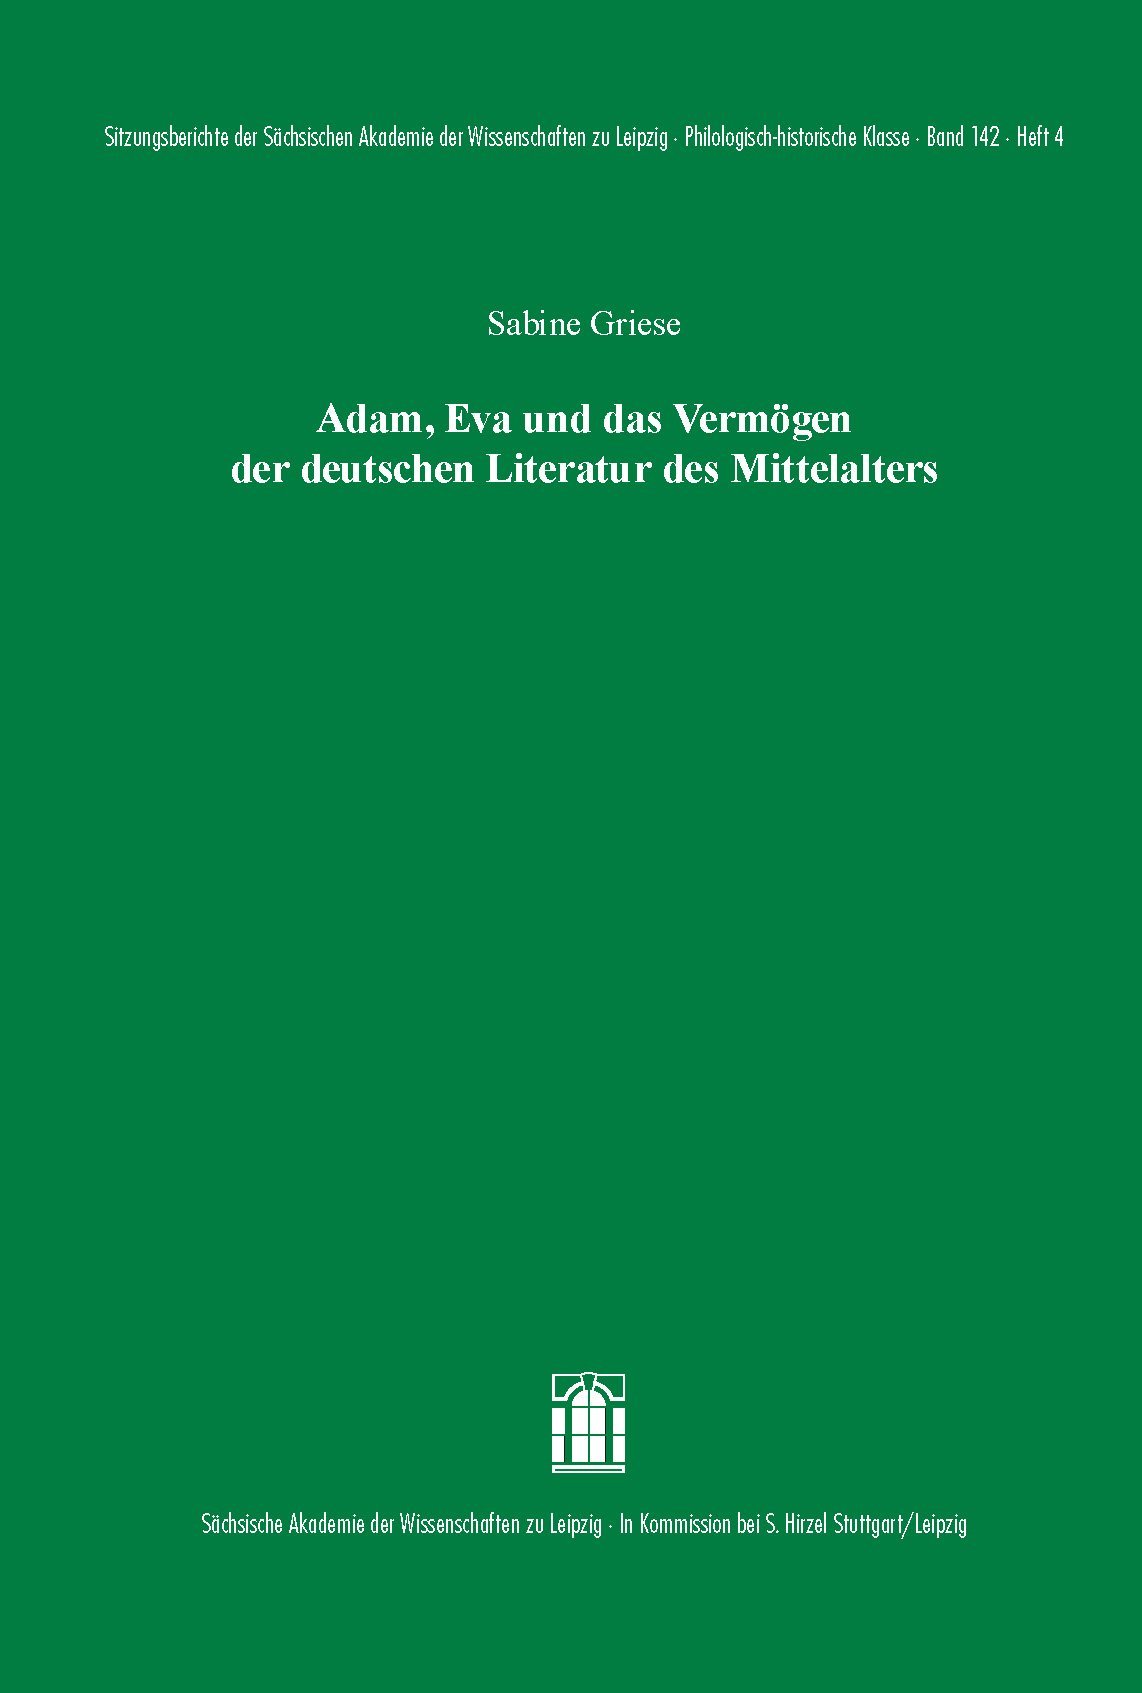 Adam, Eva und das Vermögen der deutschen Literatur des Mittelalters